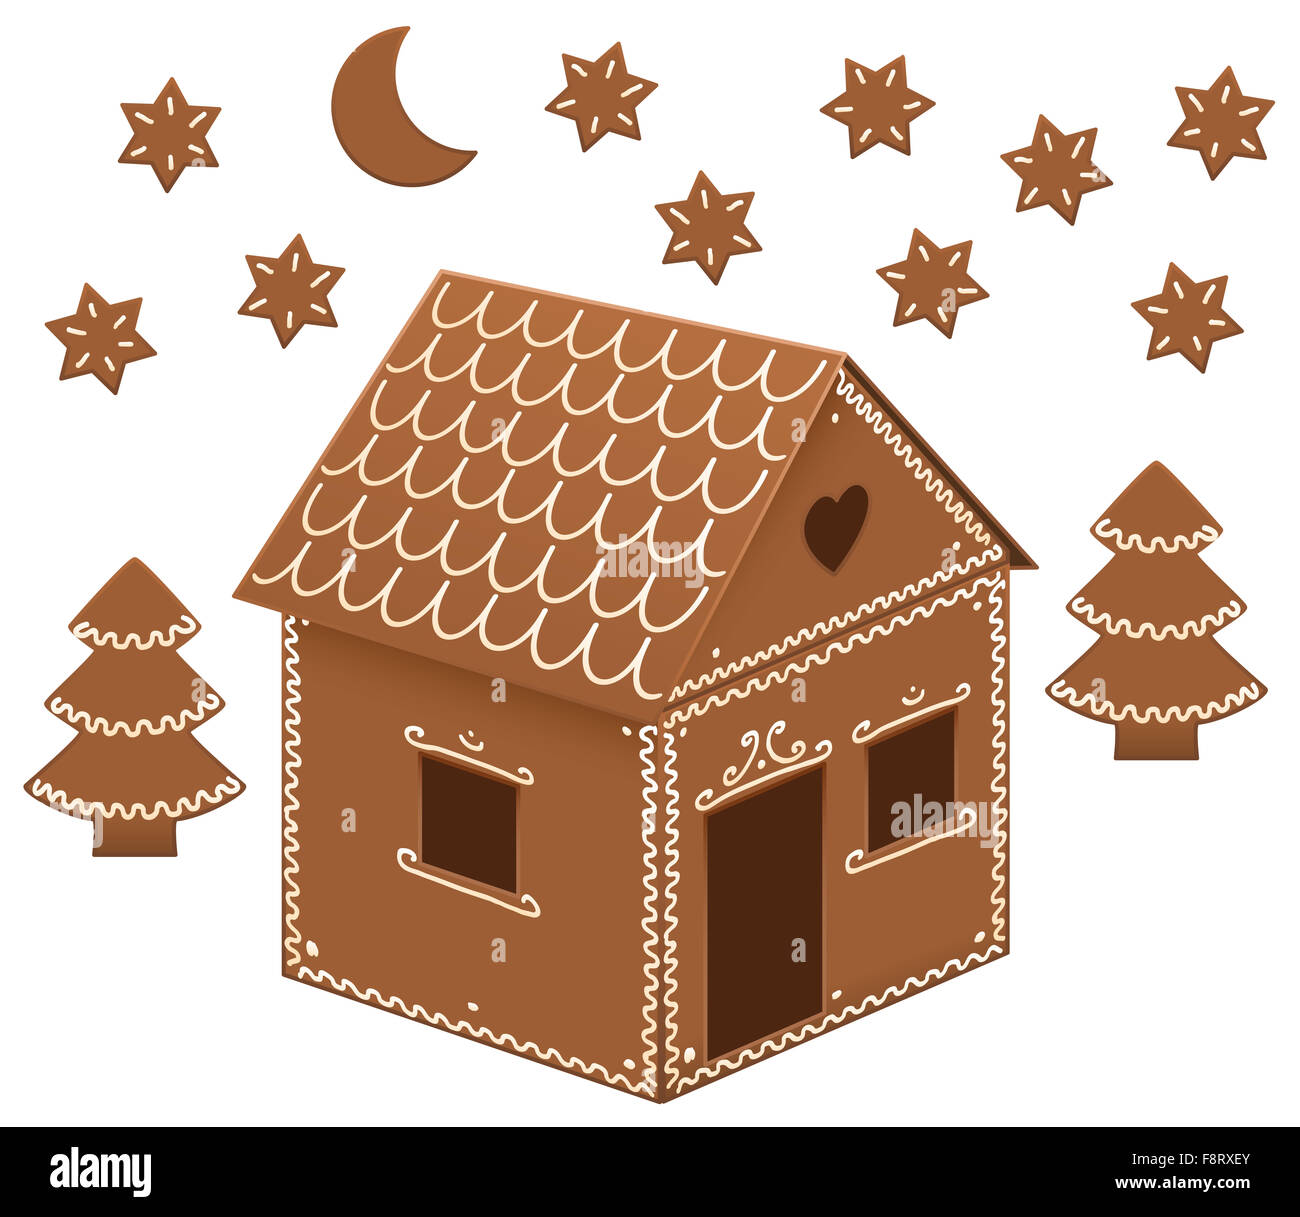 Gingerbread house con alberi, la luna e le stelle. Immagine su sfondo bianco. Foto Stock